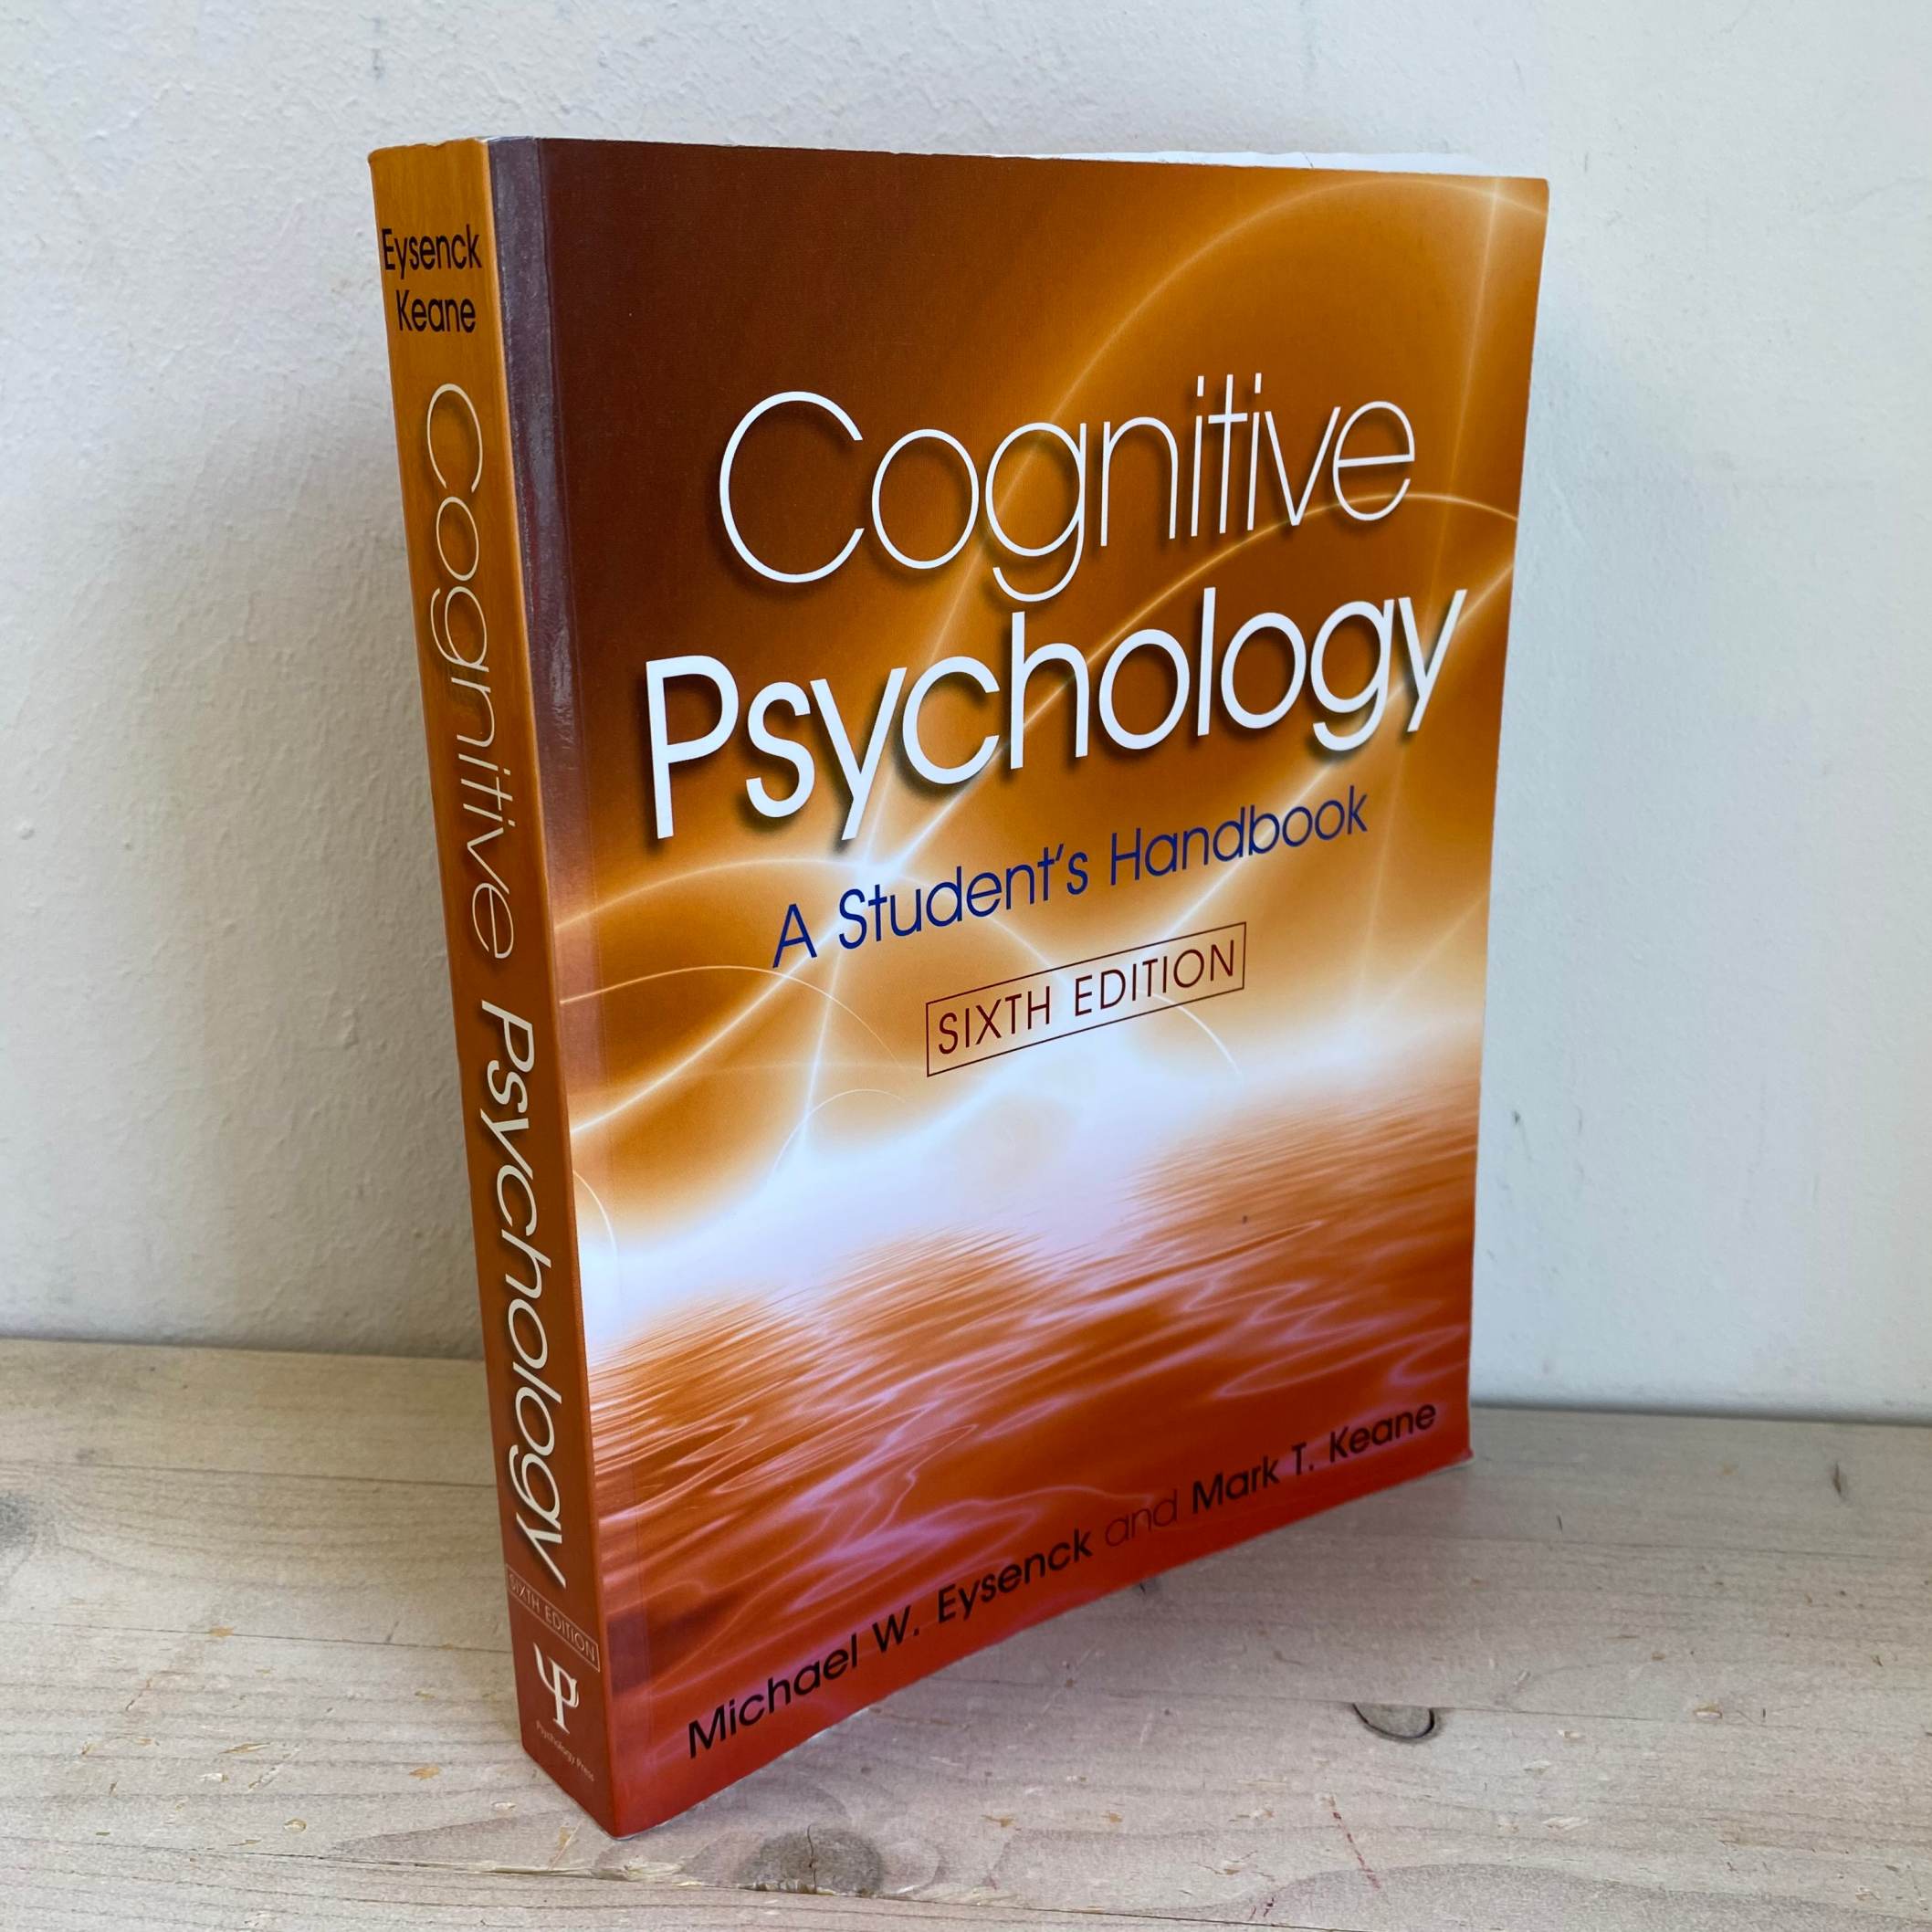 Keane　A　her　Cognitive　handbook　Køb　Eysenck　Michael　brugt　psychology:　og　Mark　student's